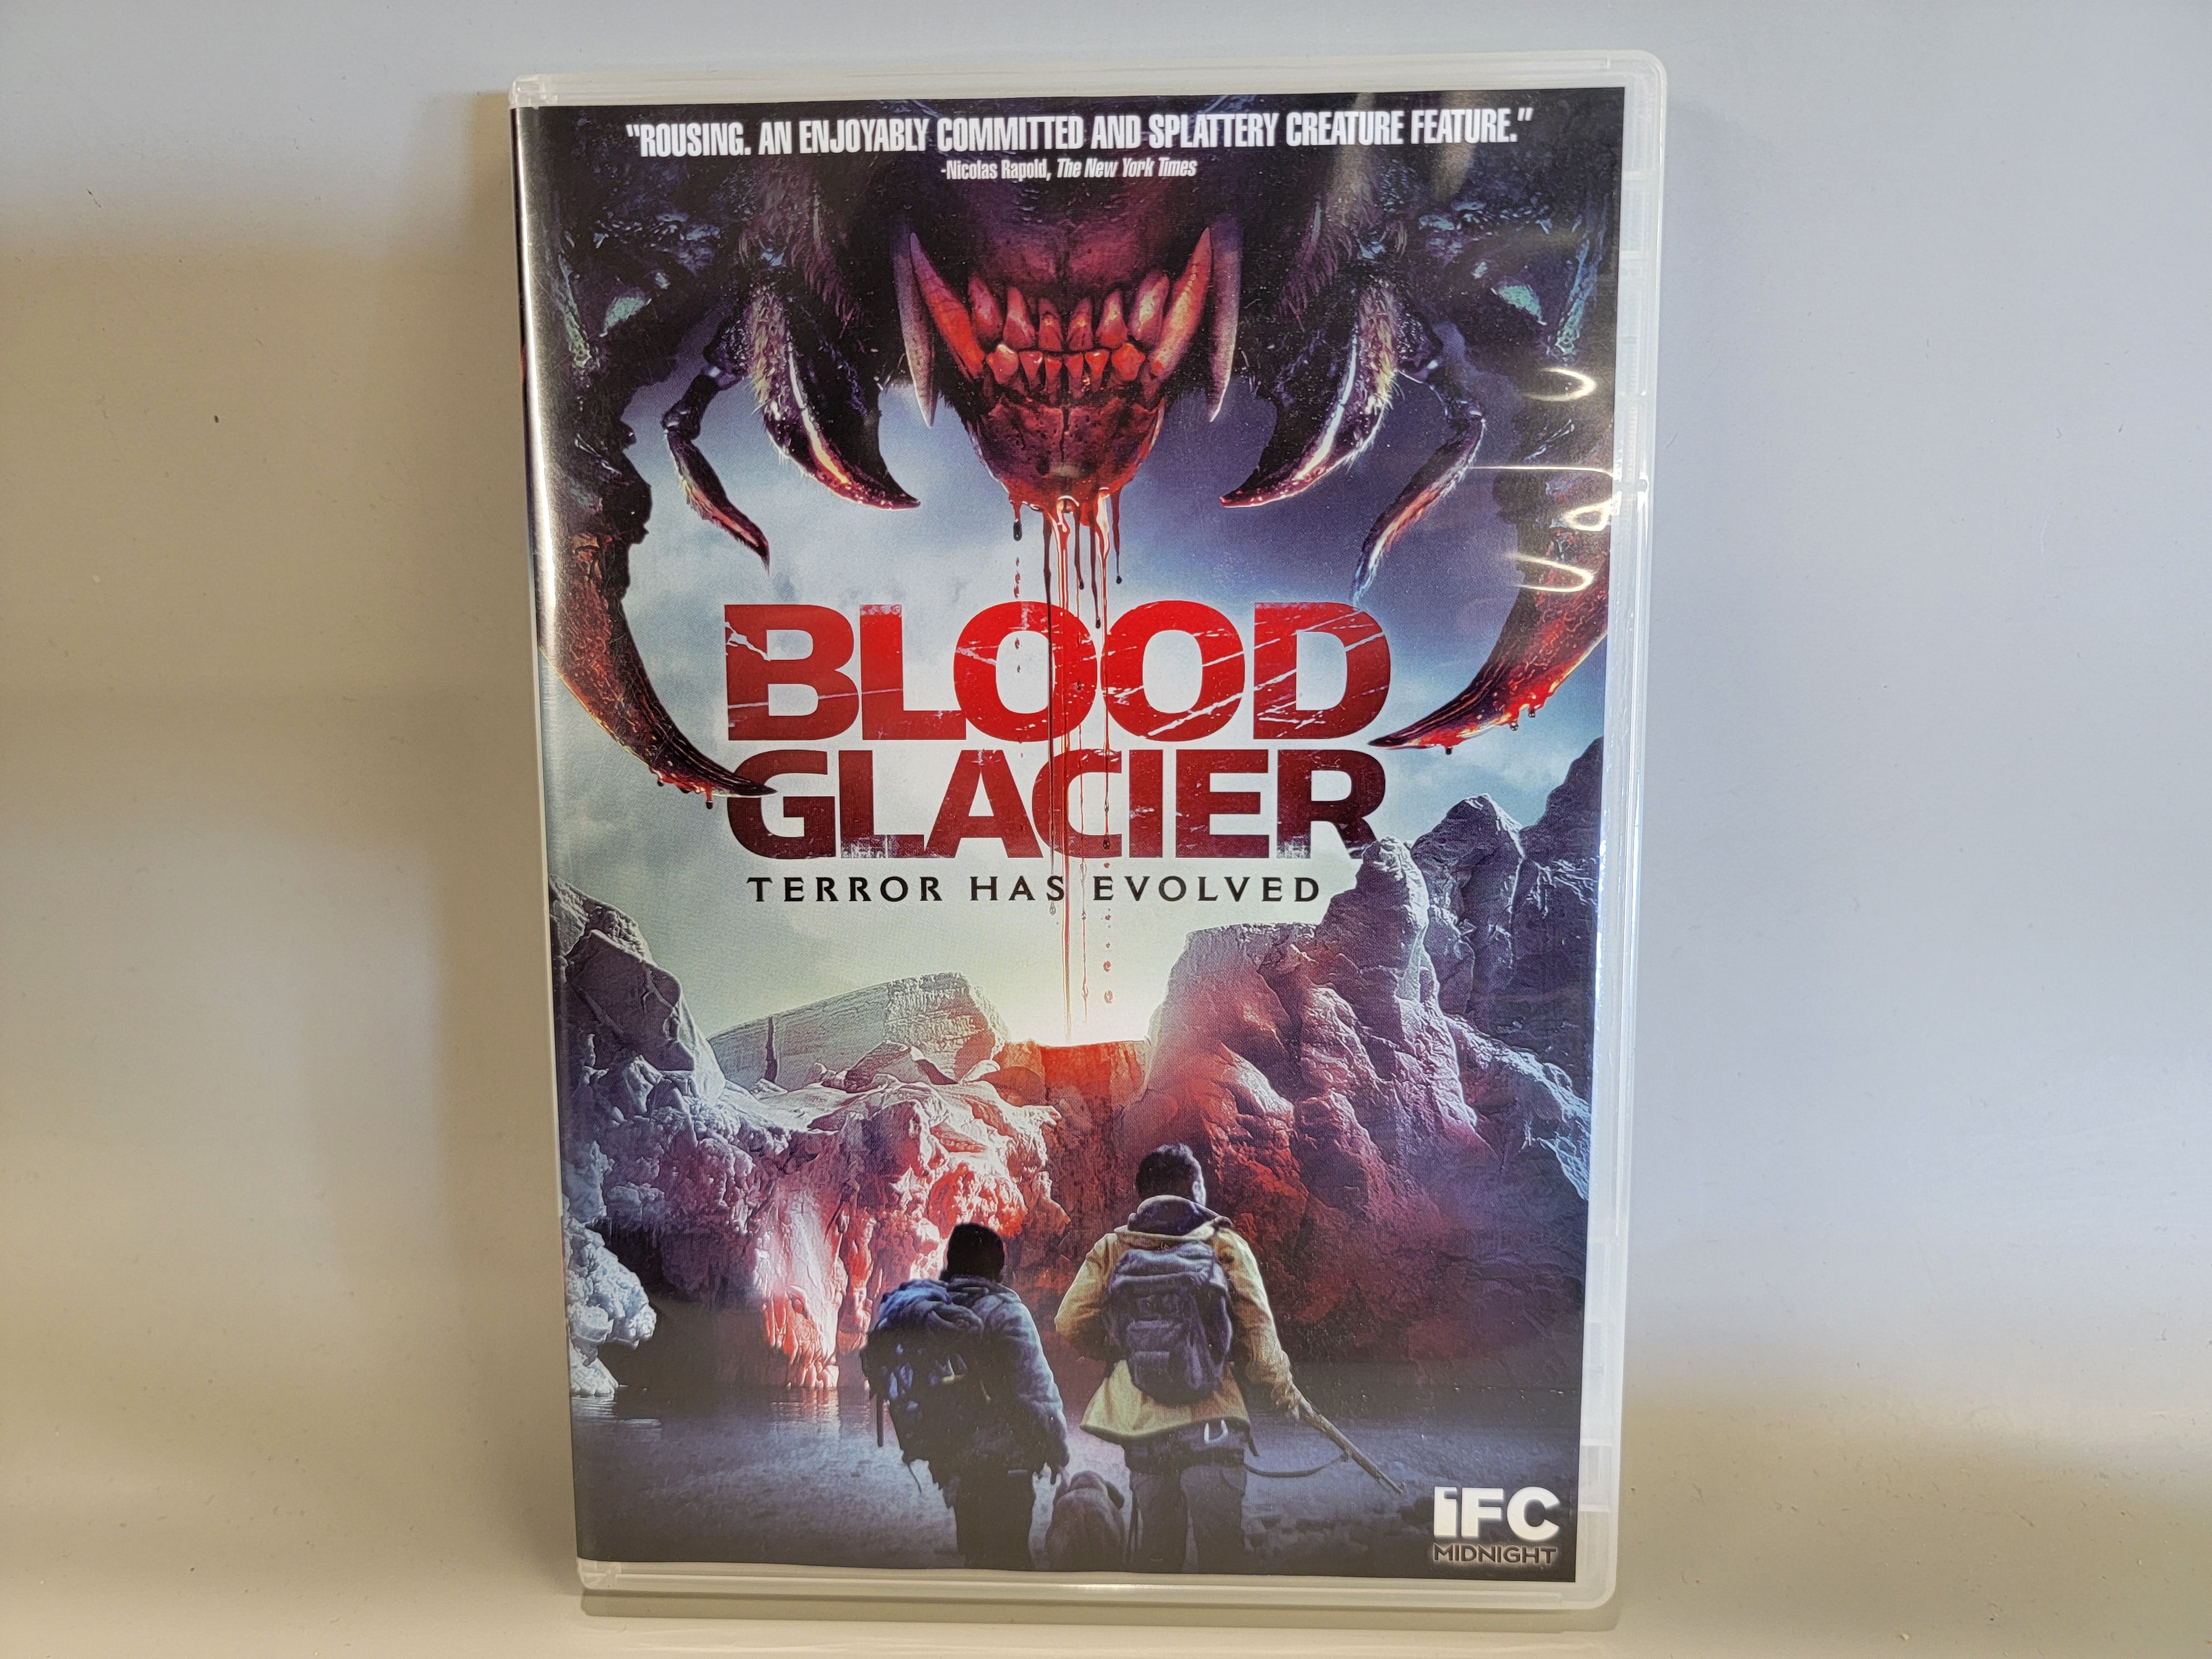 BLOOD GLACIER DVD [USED]